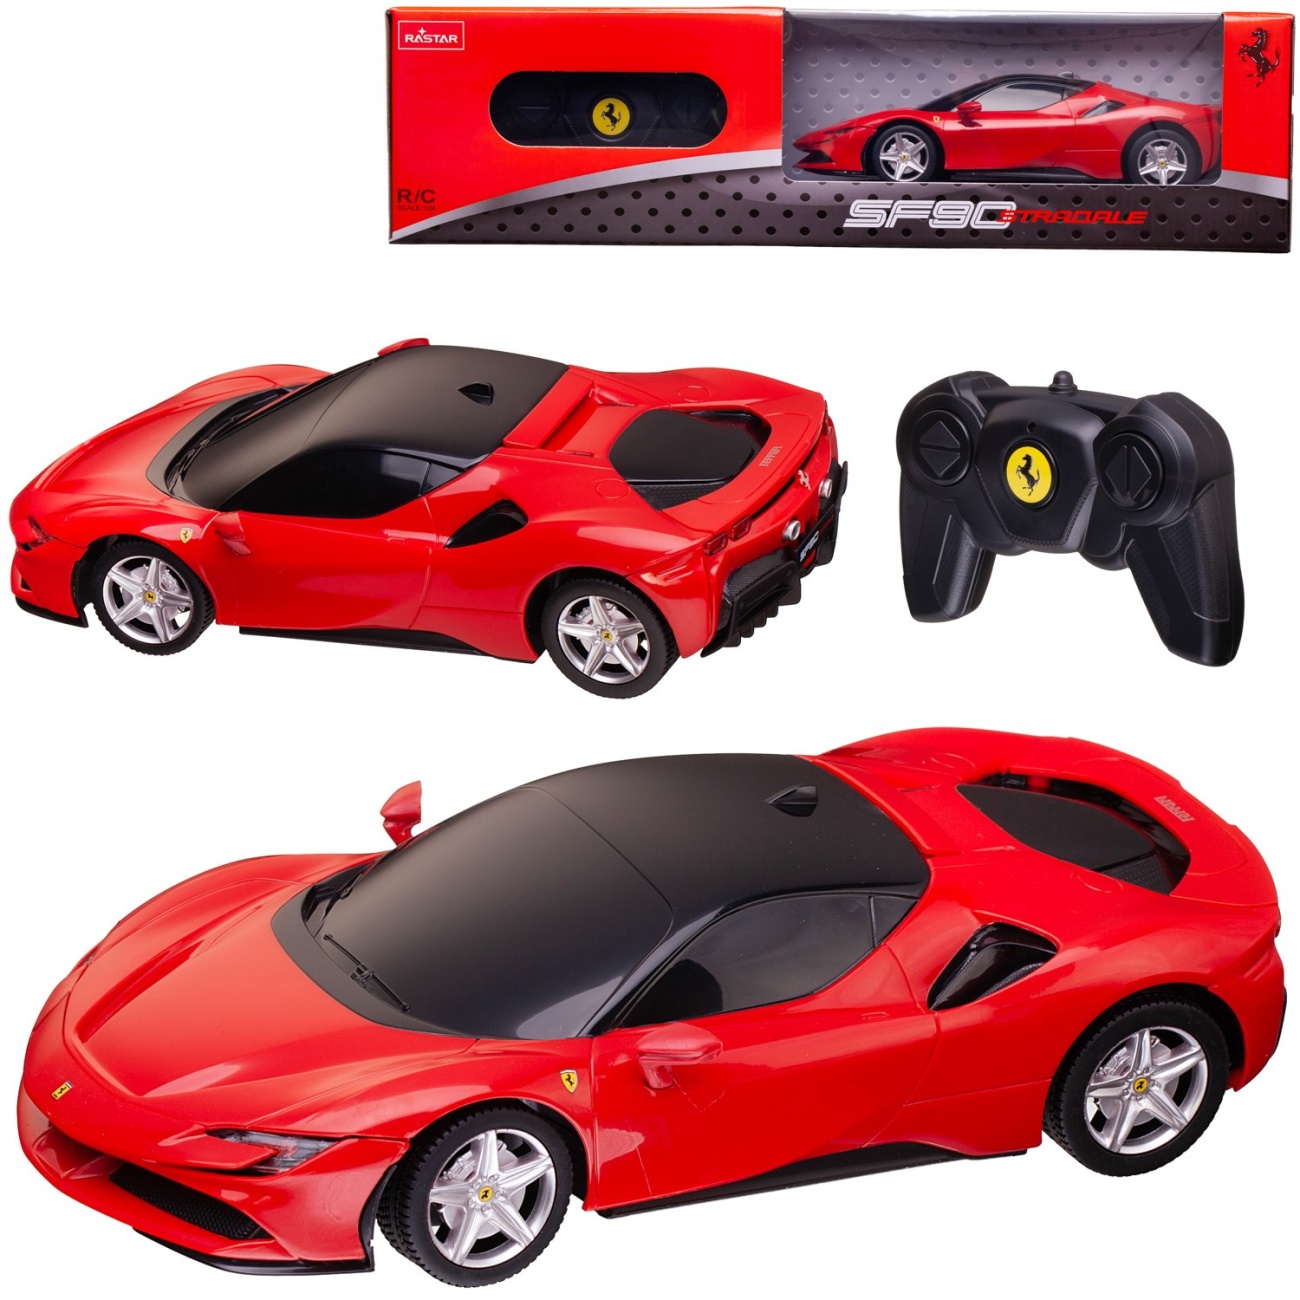 Машина р/у 1:24 Ferrari SF90 Stradale 2,4G, цвет красный, 19.5х9.6х5.3 RASTAR 97600R